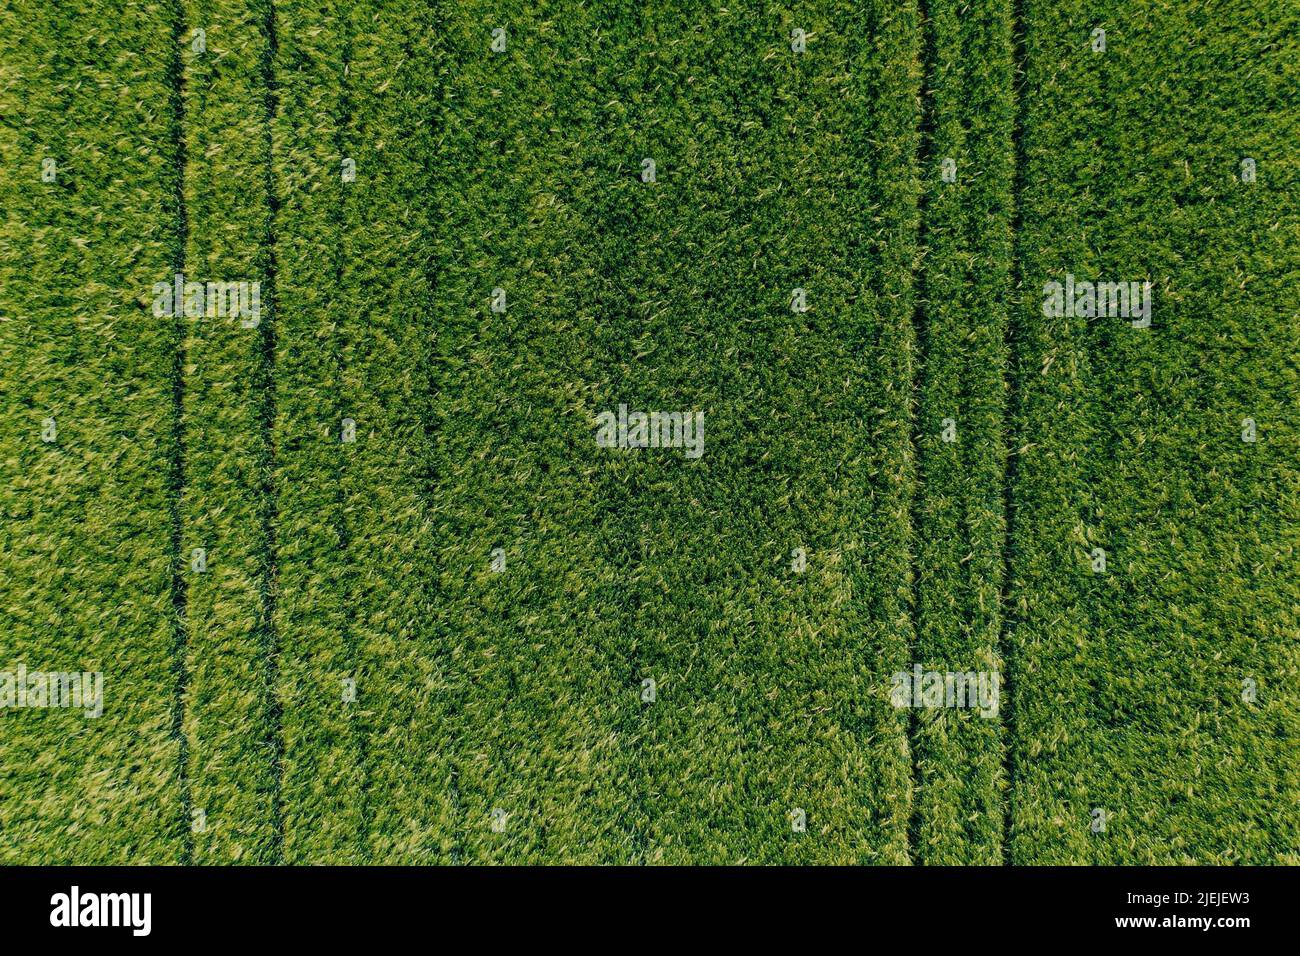 Luftaufnahme des Getreidefeldes der grünen unreifen Gerste (Hordeum Vulgare) von Drohne pov, von oben nach unten geschossen Stockfoto